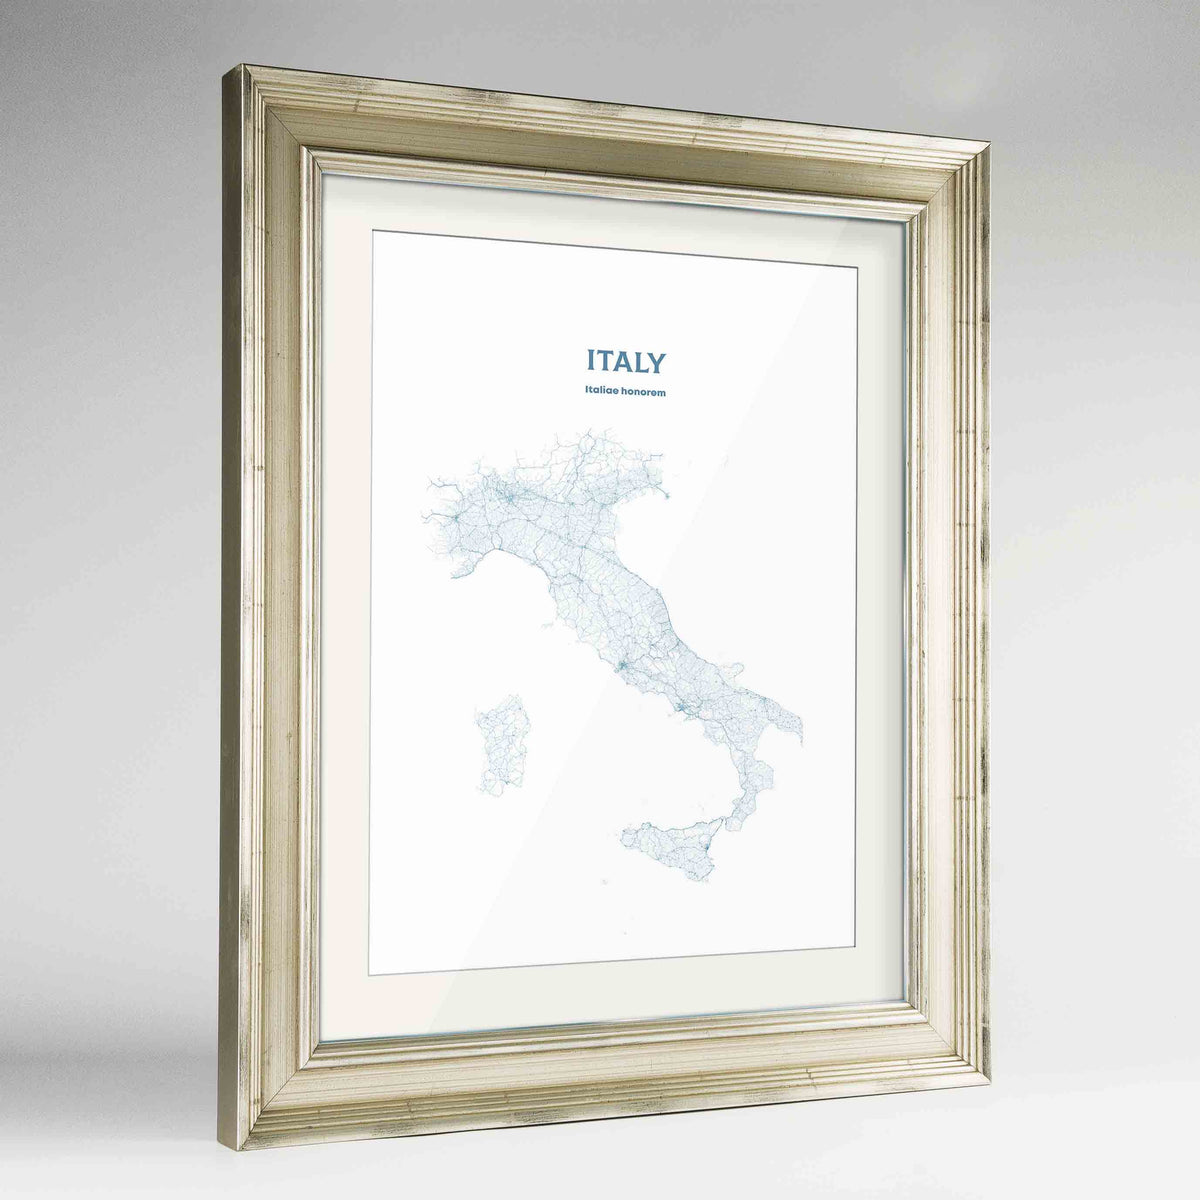 Italy - All Roads Art Print - Framed